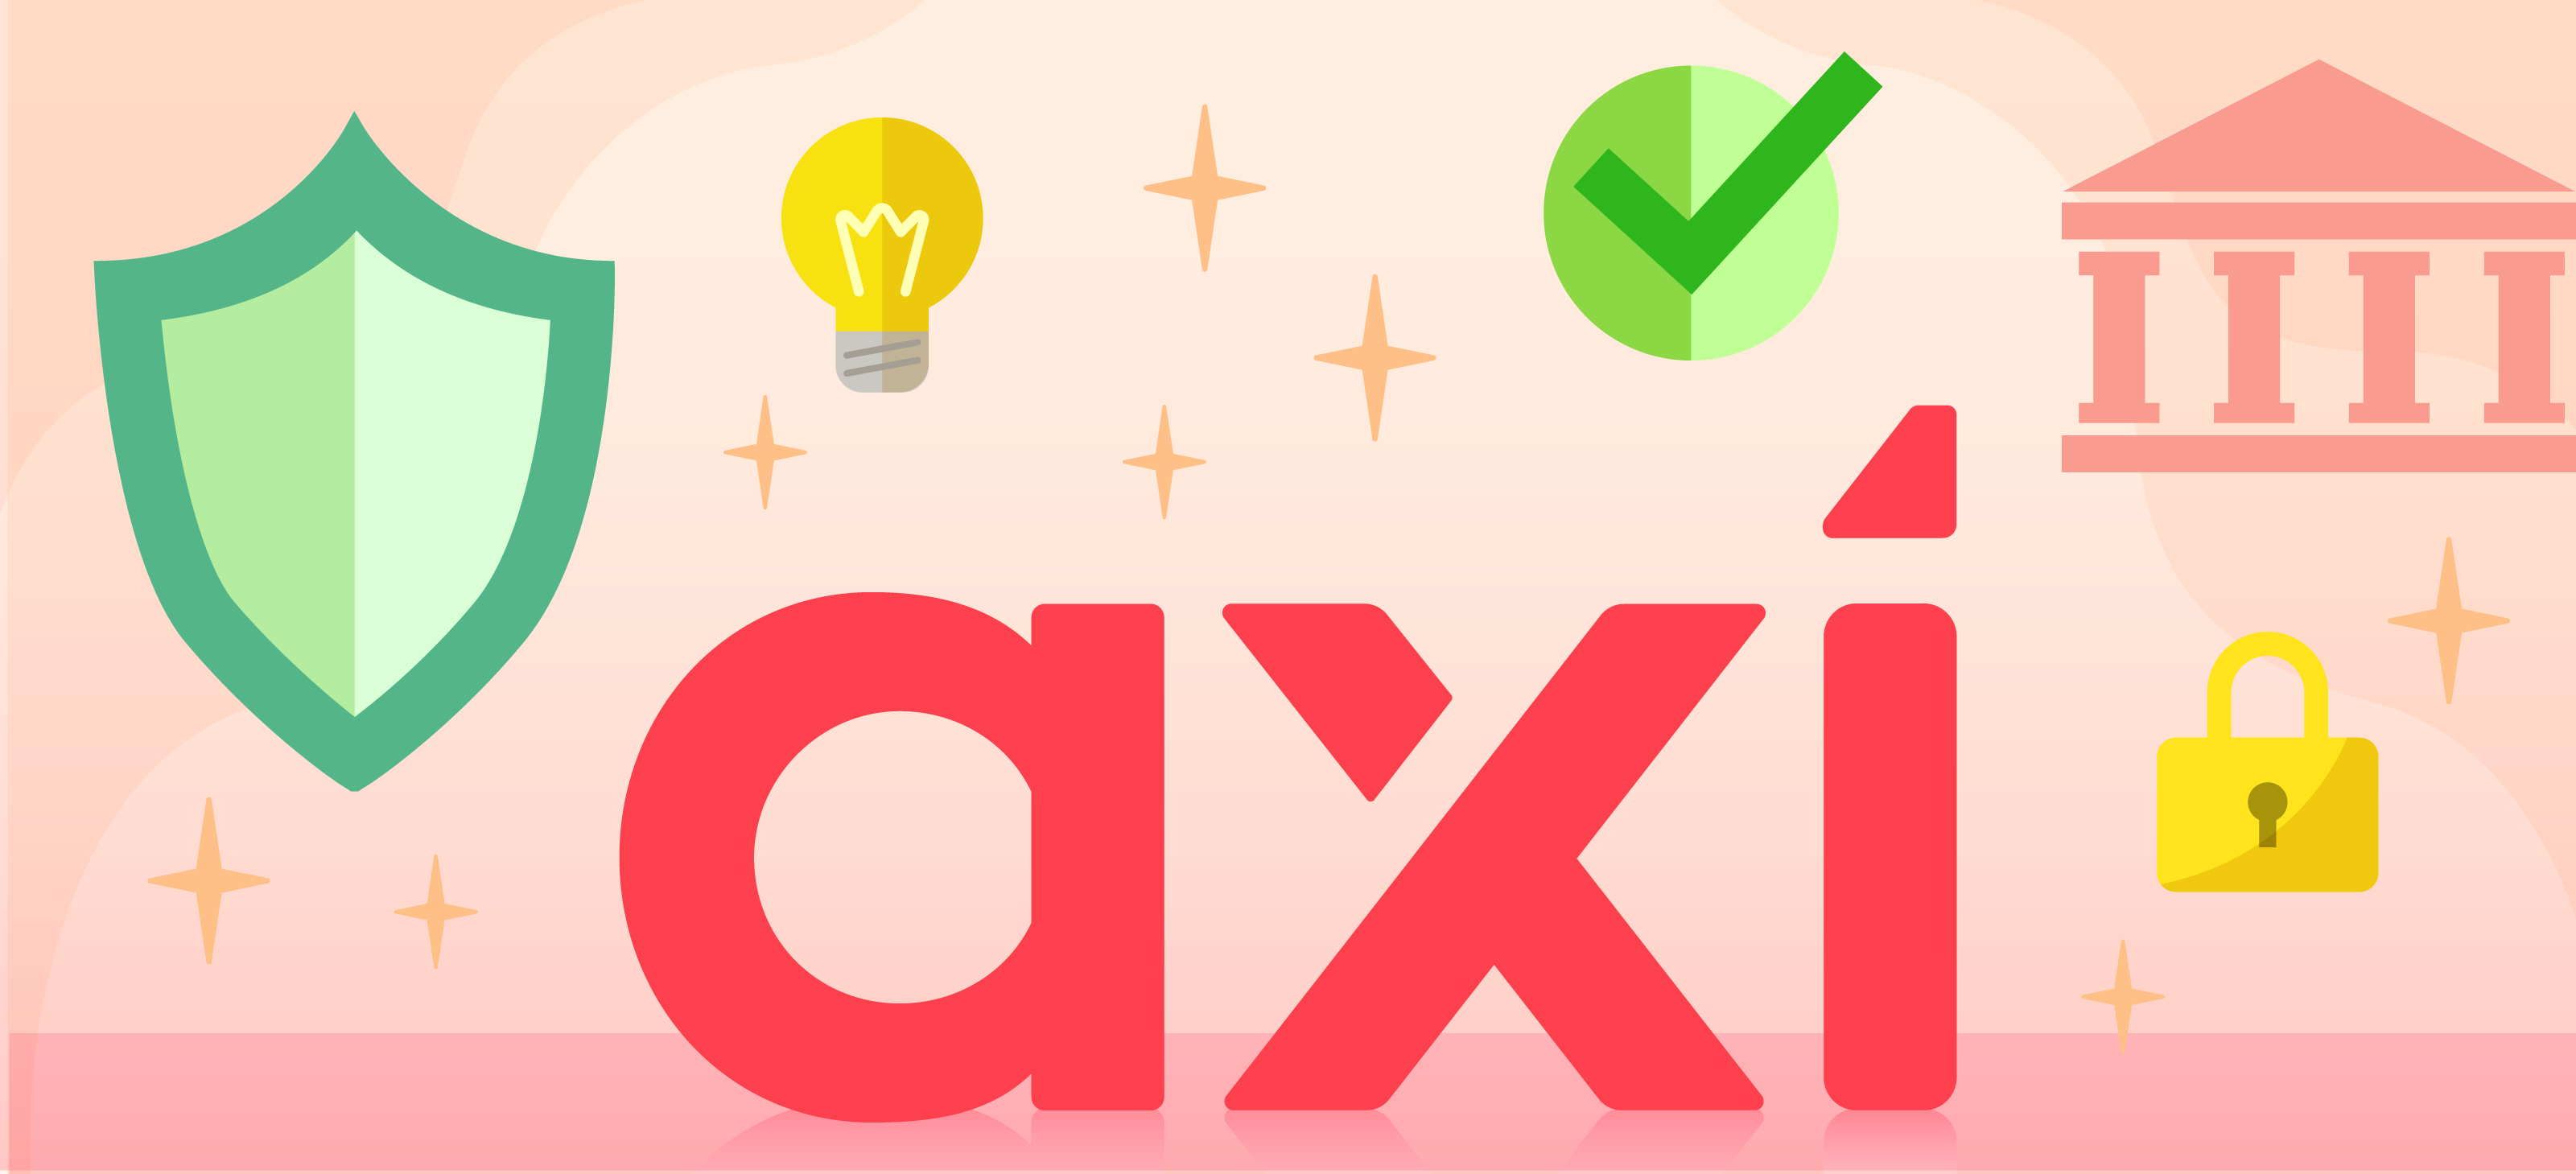 Axiの安全性と信頼性